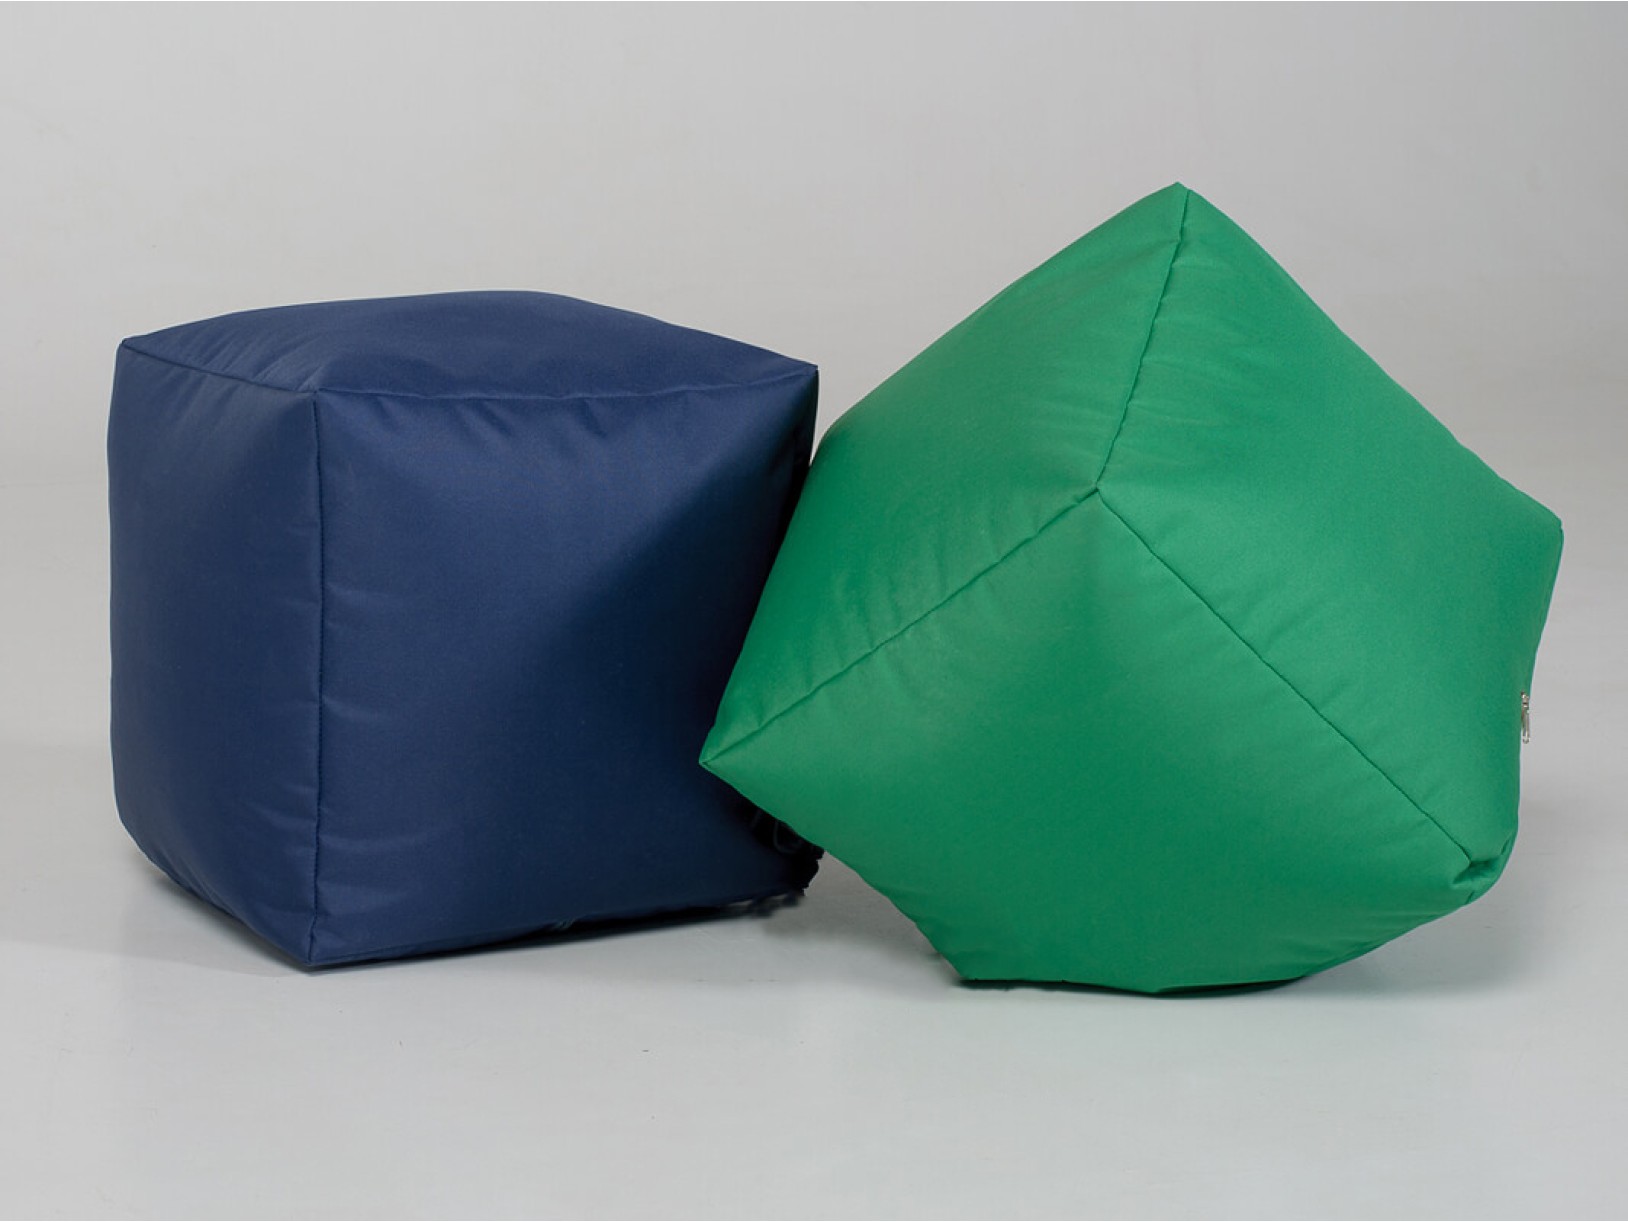 Пуфик "Куб" 40 см из ткани Oxford темно-синий и зеленый - Pufic.com.ua